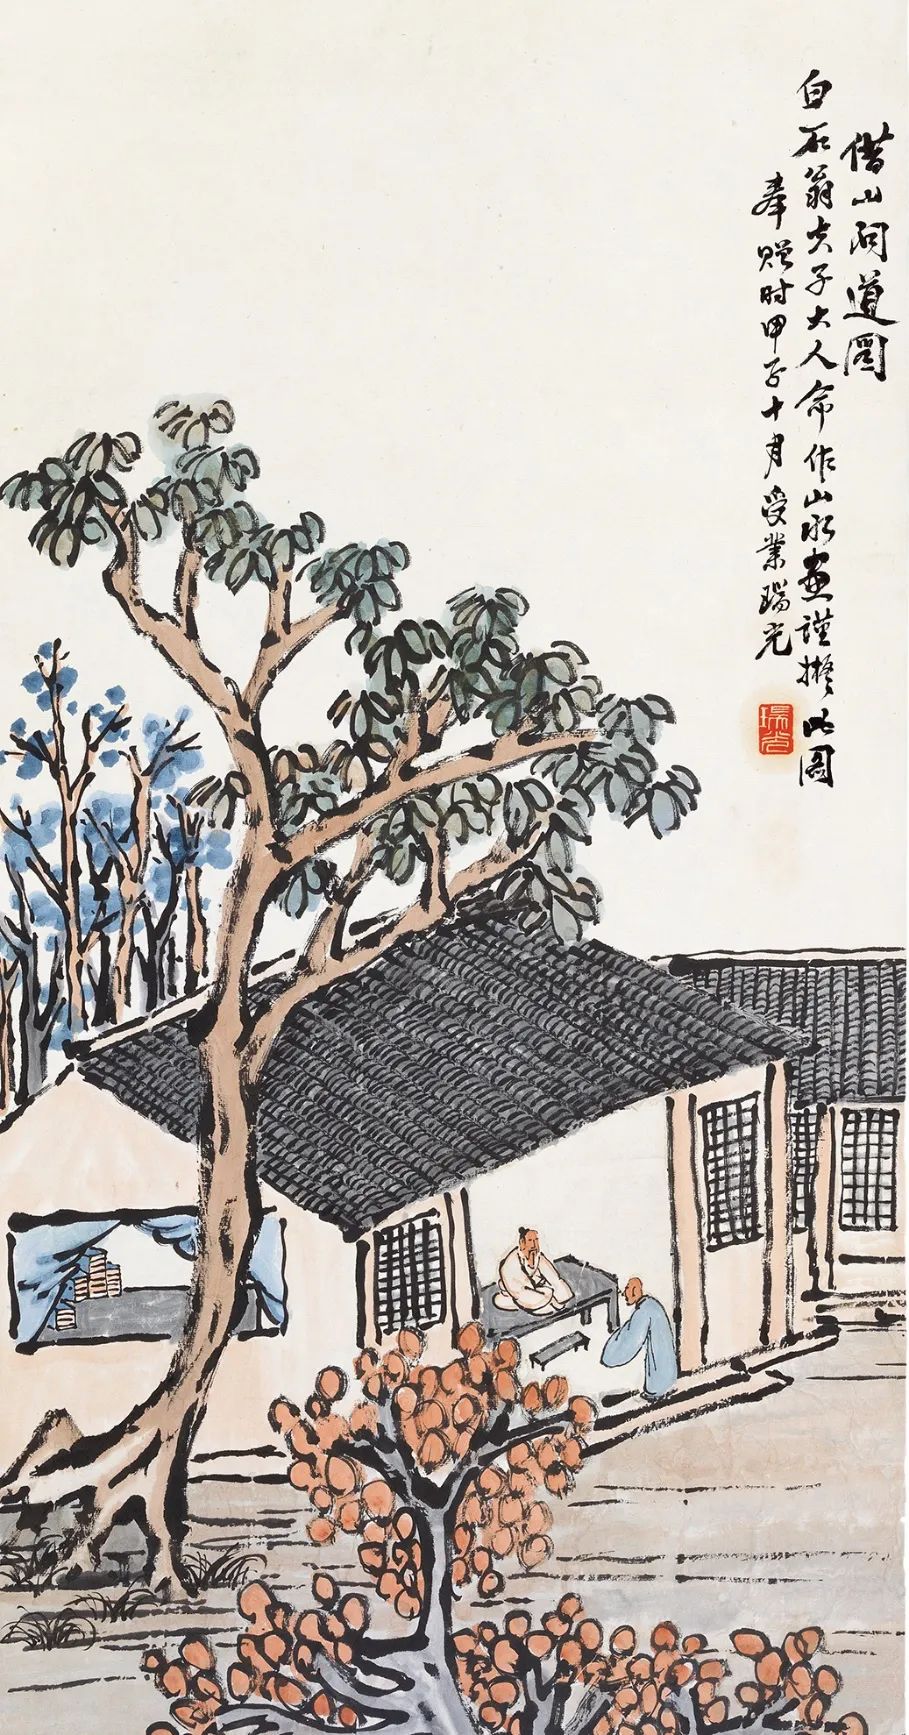 瑞光《借山问道》 1924年 纸本设色 北京画院藏